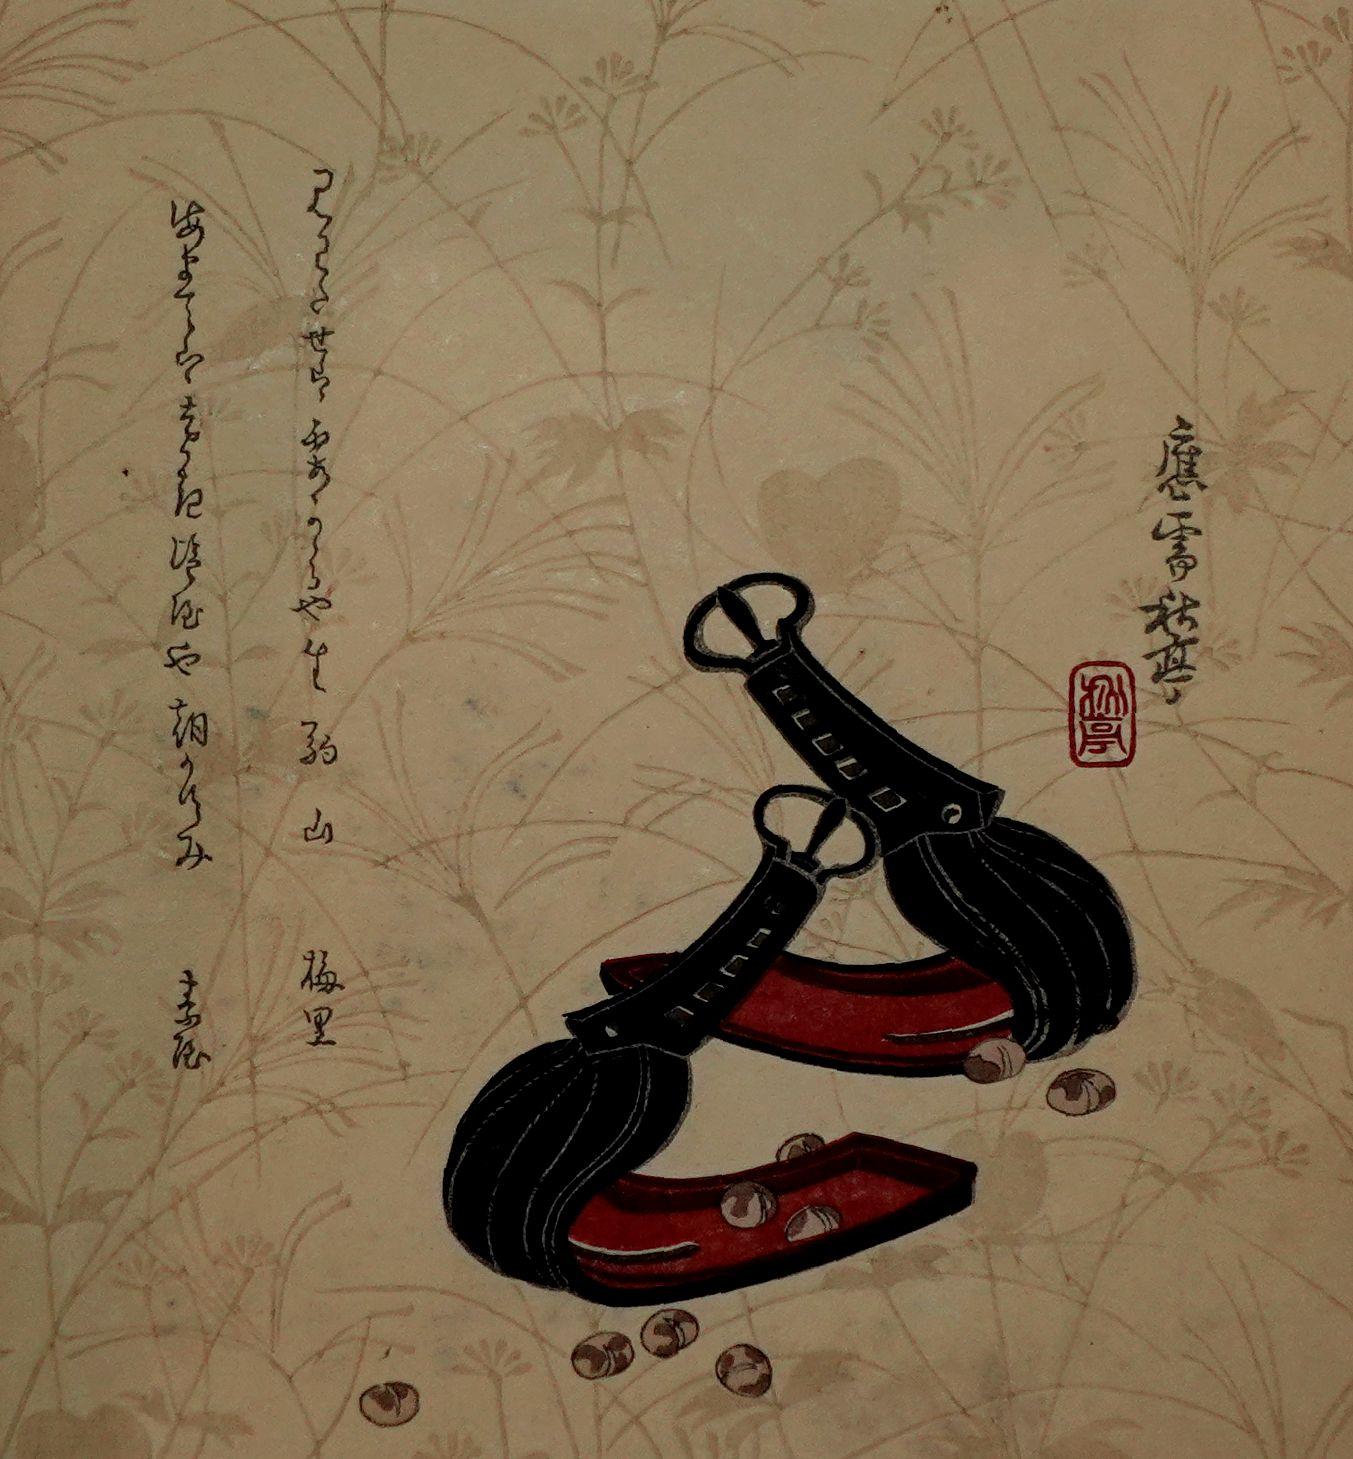 Das Gemälde zeigt einen sehr alten und traditionellen japanischen Gürtel mit verstecktem Platz zum Aufbewahren von Kleinigkeiten wie Pillen, Ringen und Schmuck. 

TANAKA SHUTEI(1810 ~ 1858)
Tanka war ein sehr wichtiger Farbholzschnittkünstler in der